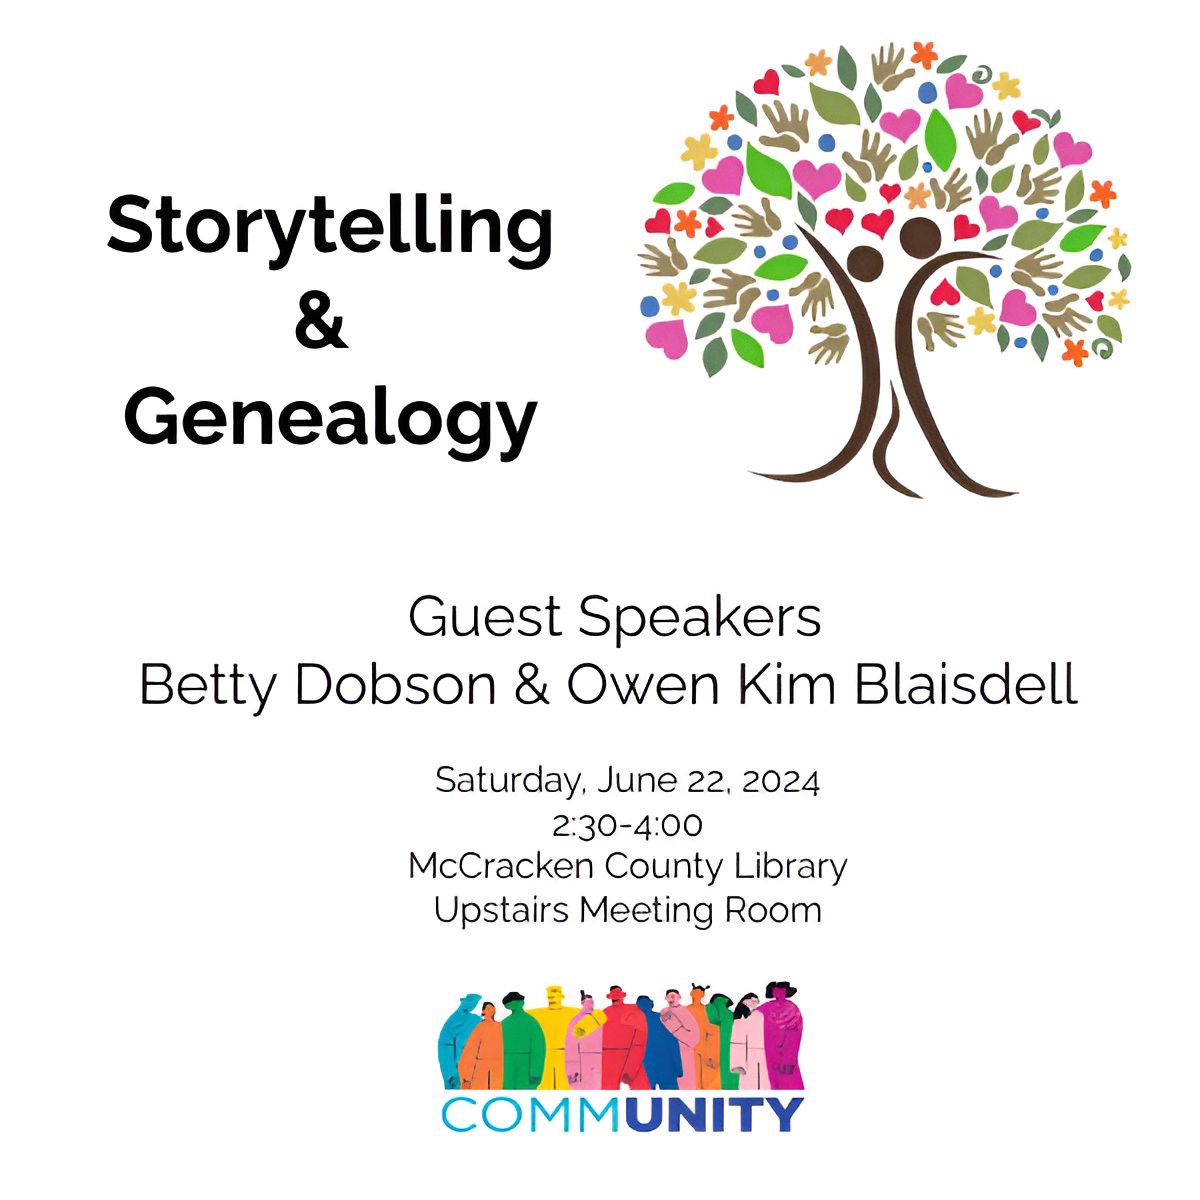 Storytelling & Genealogy